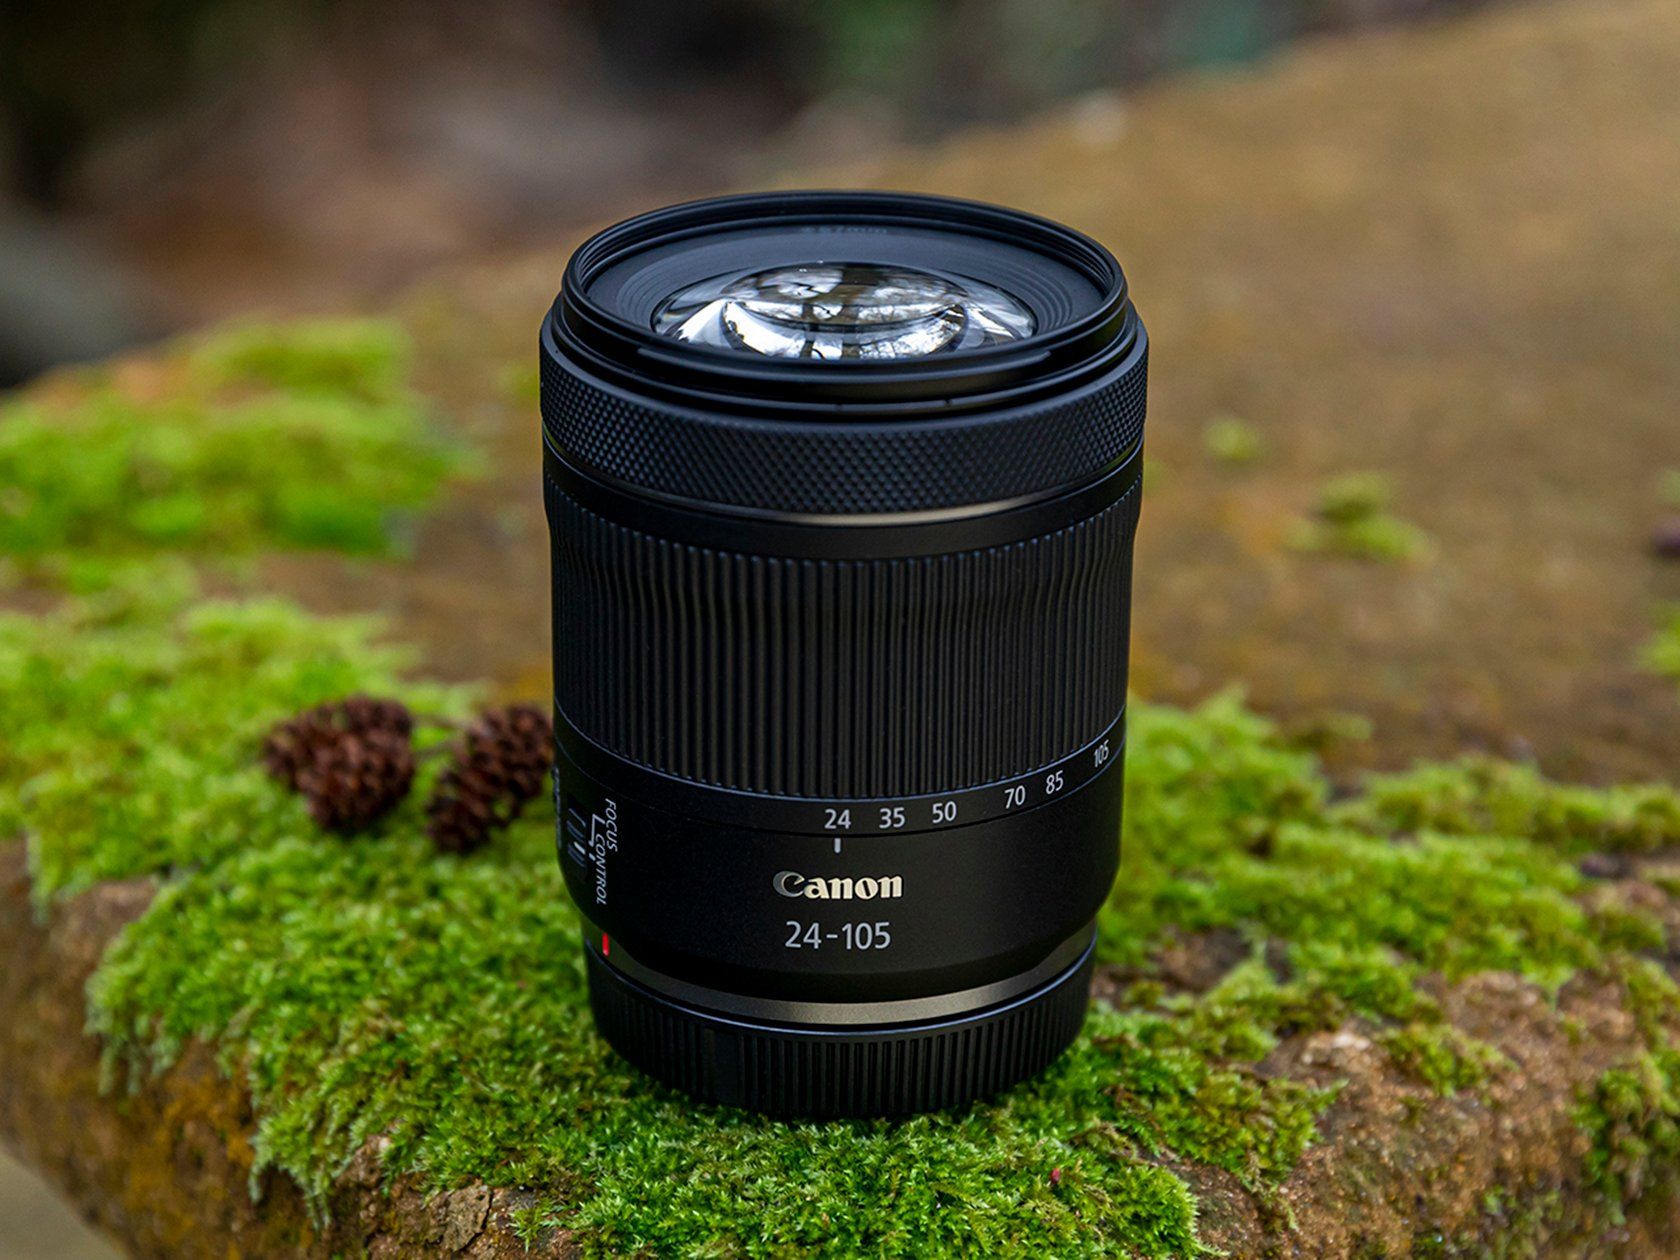 RF — Canon Objektiv spiegellose EOS II Deutschland Mark R6 STM IS Kamera WLAN-Kameras Shop und Canon in F4-7.1 24-105mm